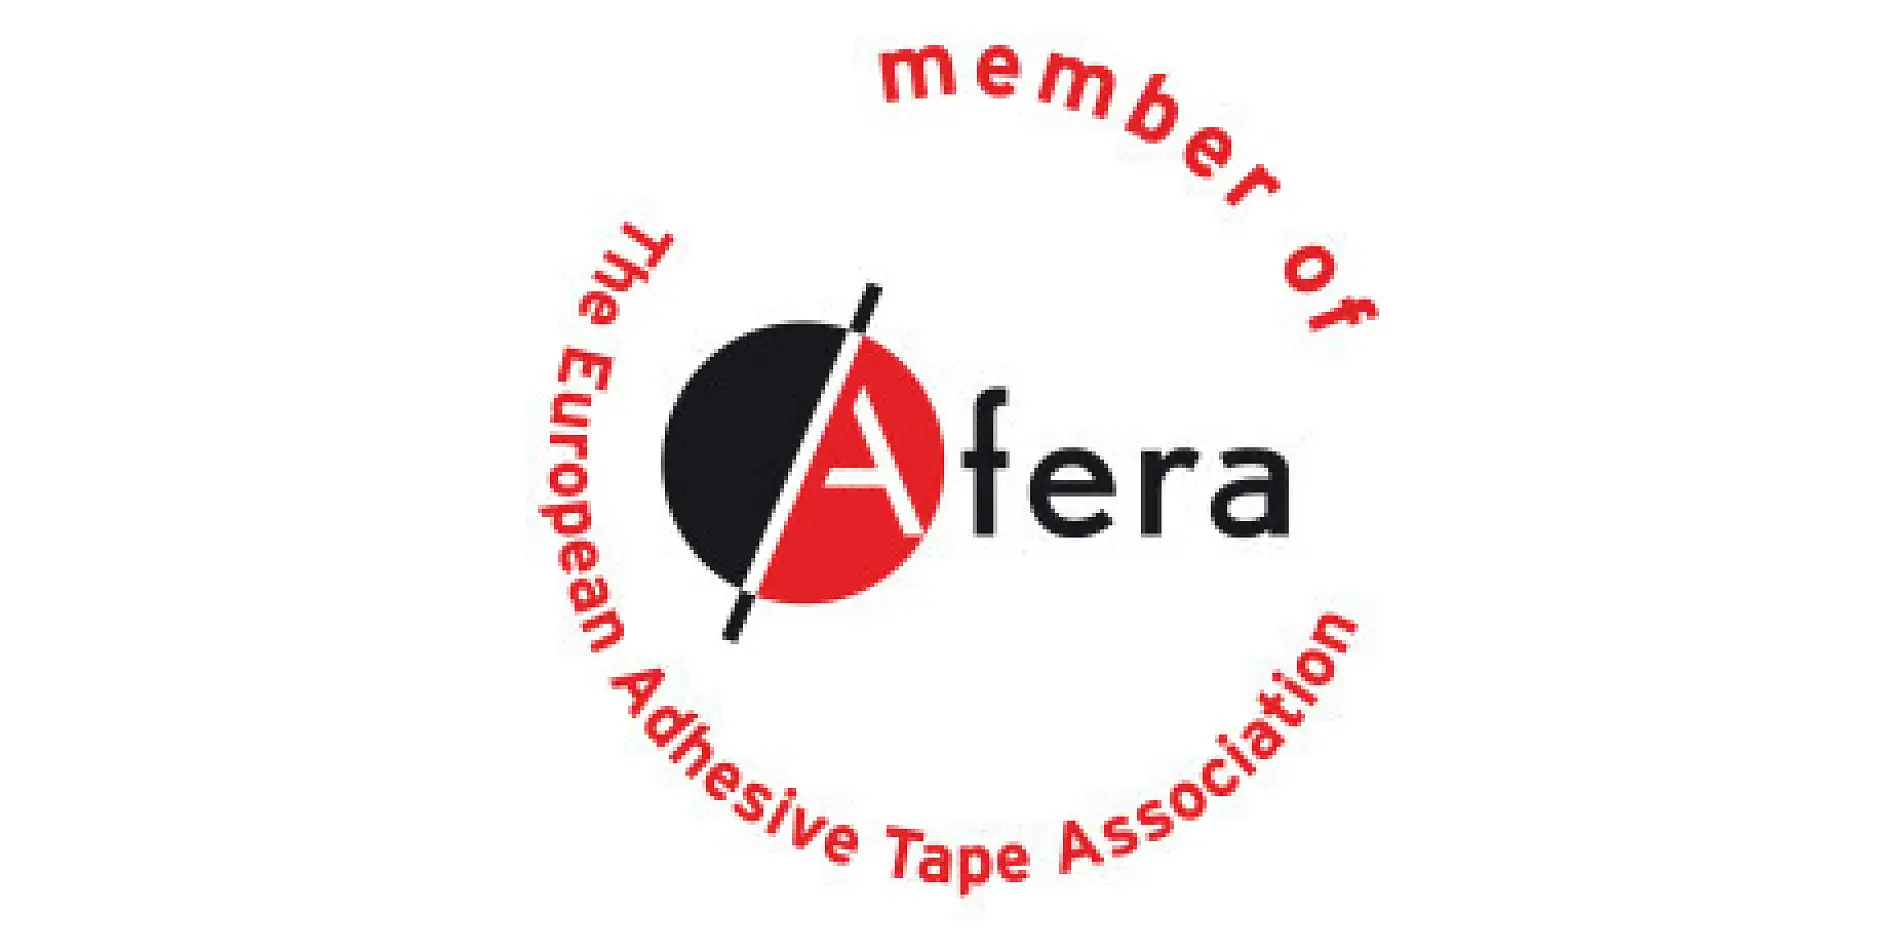 A tesa é um membro da Afera - a Associação Europeia da Indústria da Fita Adesiva. Entre os seus membros contam-se fabricantes, fornecedores de matérias-primas e maquinaria, empresas transformadoras (impressão, guilhotinagem, corte e laminação de fita adesiva) e organizações nacionais do setor.